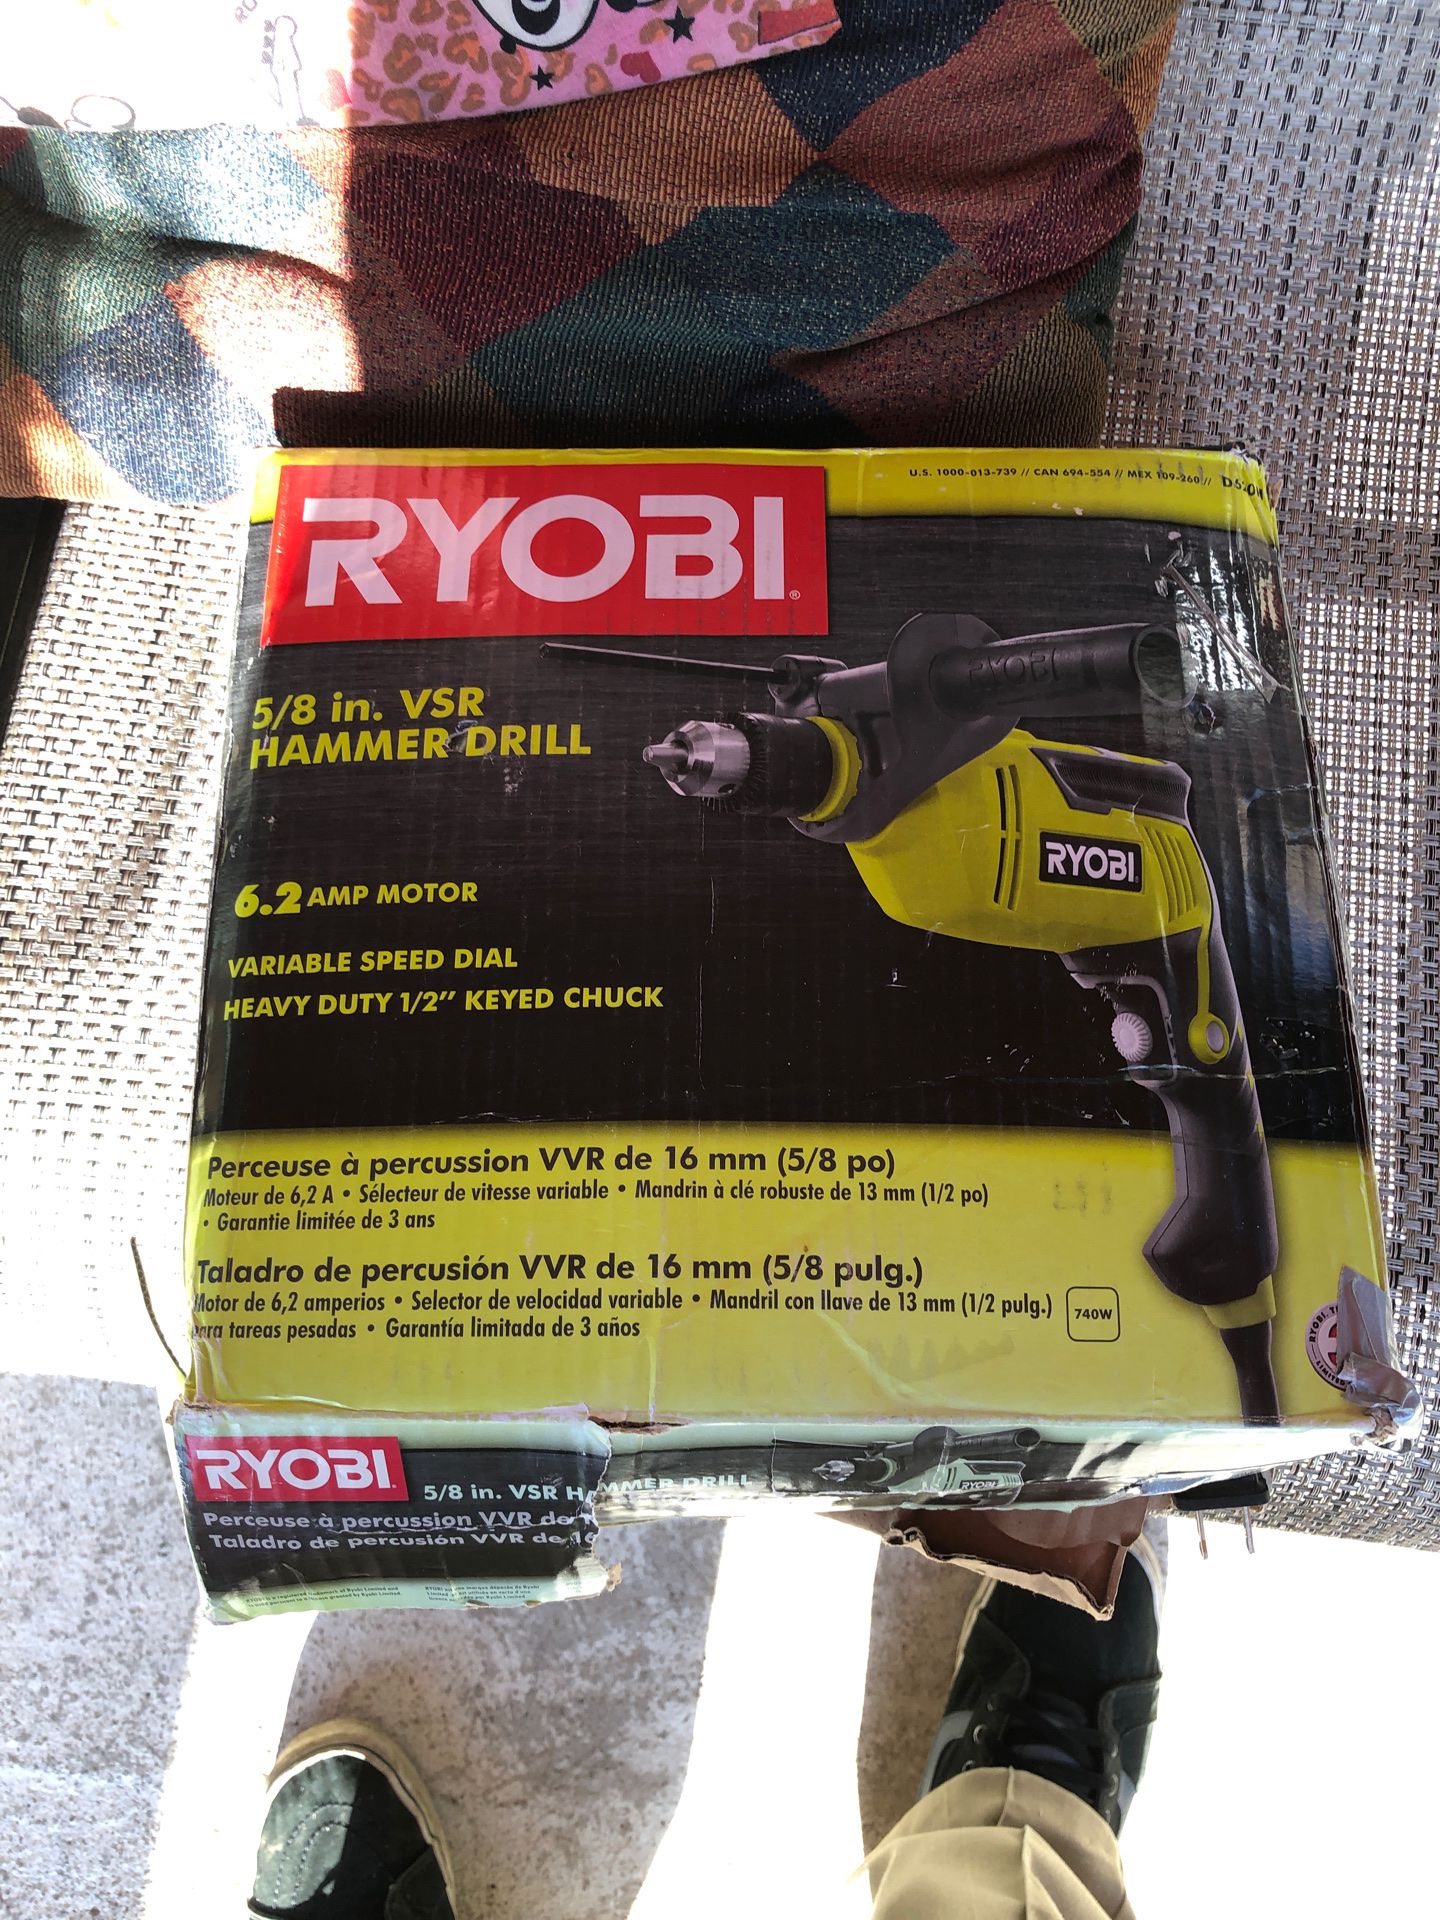 Ryobi 5/8 hammer drill